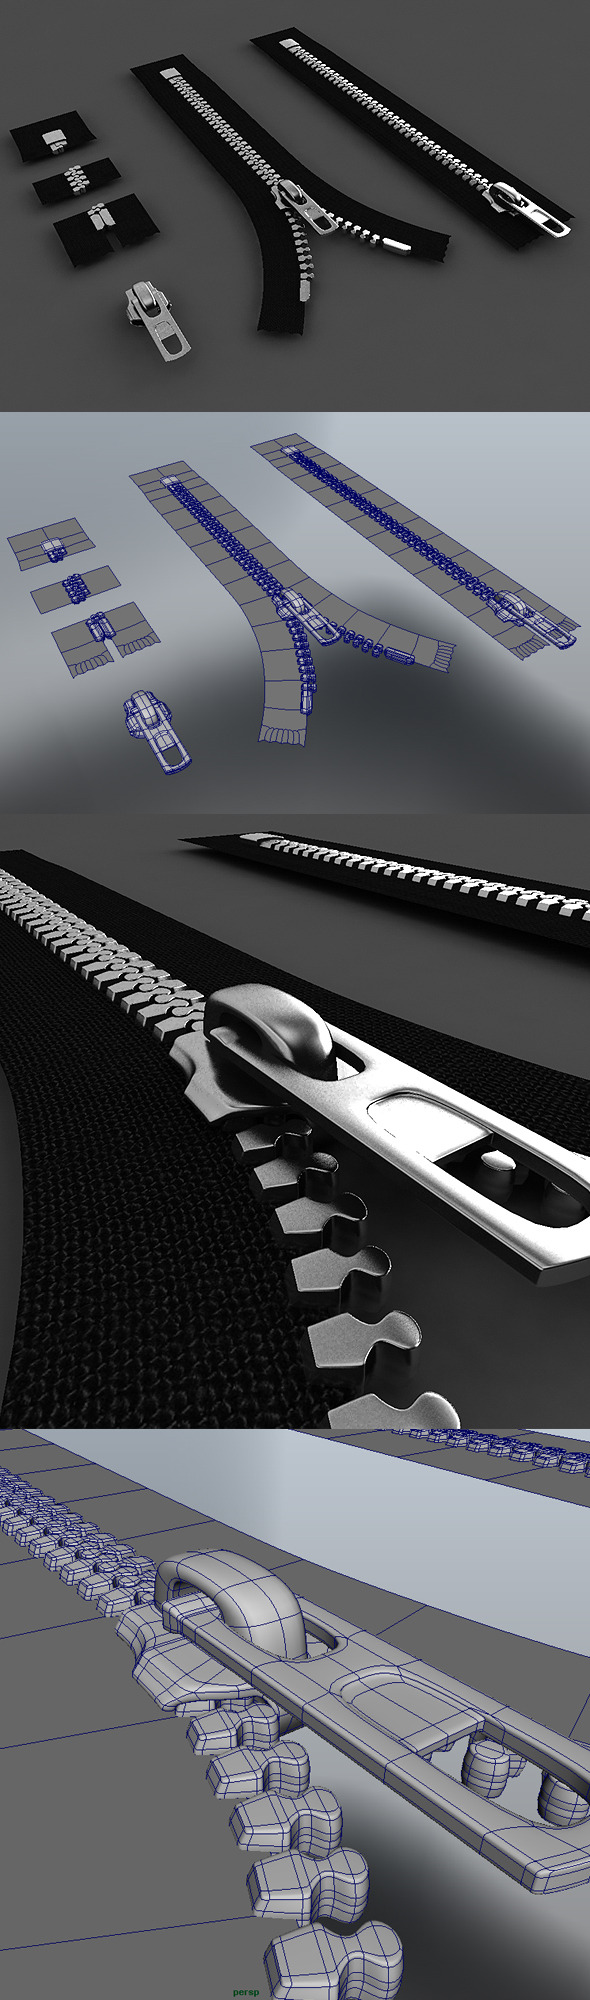 Zipper Construction Kit - 3Docean 272446